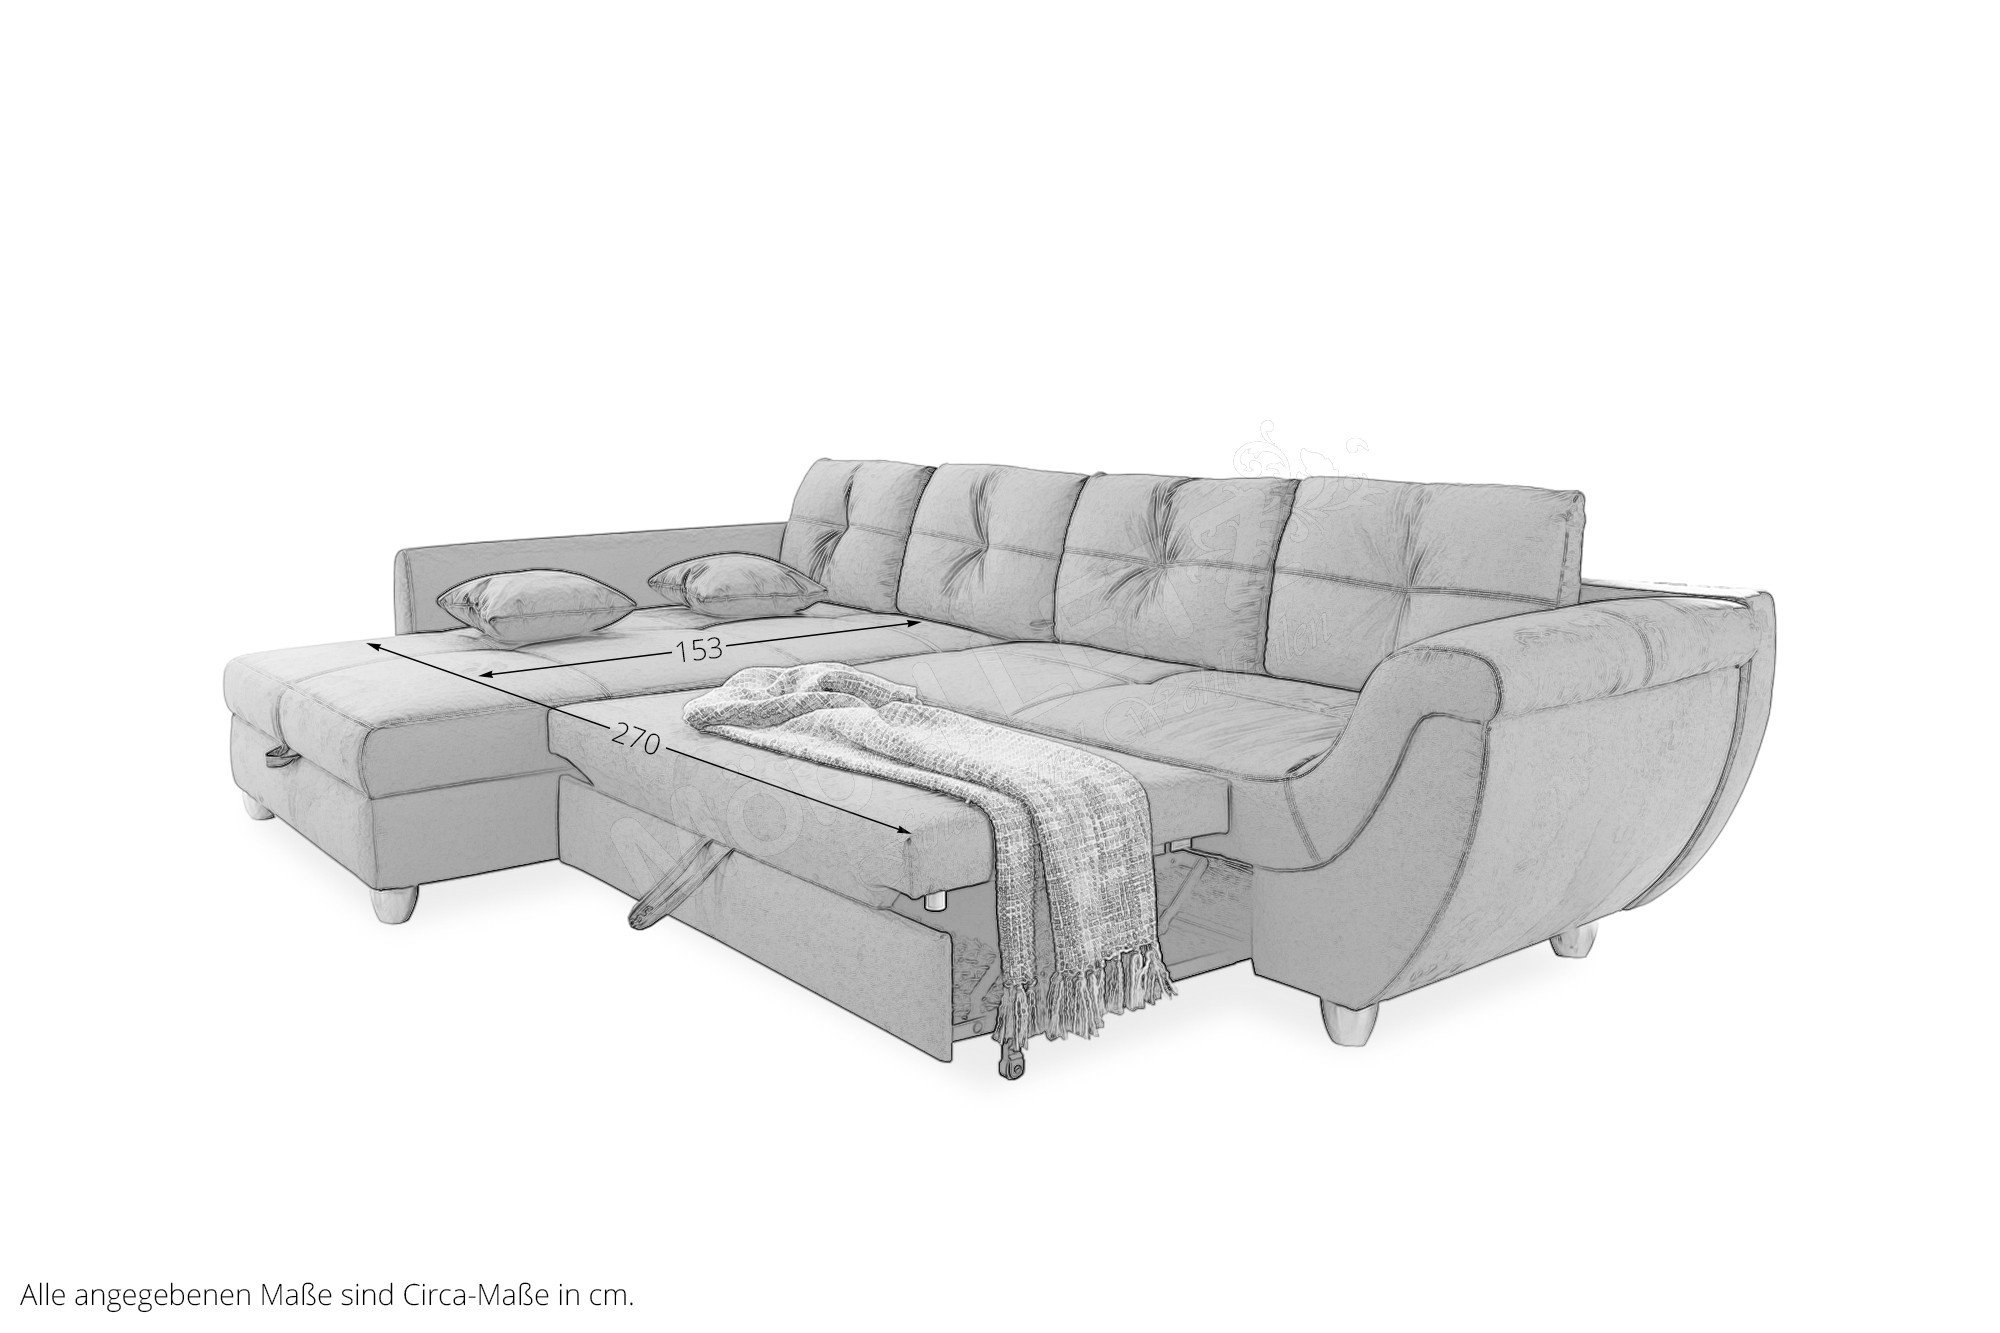 Jockenhöfer Polstermöbel Maranello Sofa in L-Form Online-Shop | Möbel Ihr Letz grau 